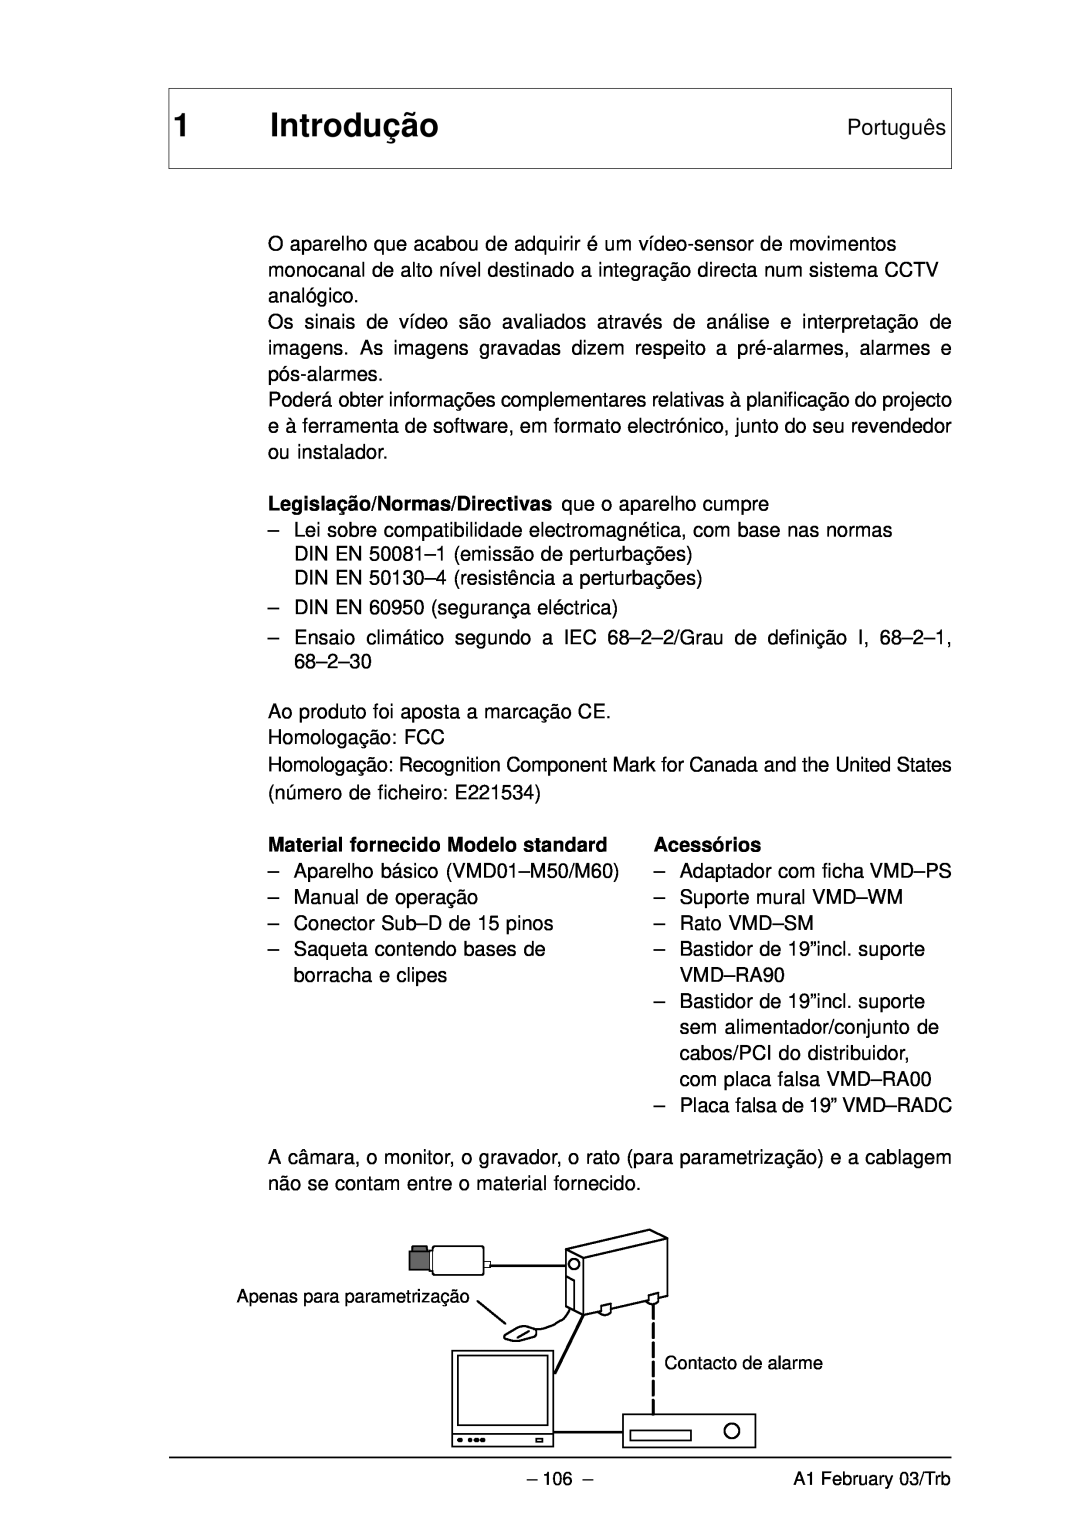 Bosch Appliances VMD01 M60 NTSC, VMD01 M50 PAL manual Introdução, Português, Material fornecido Modelo standard, Acessórios 